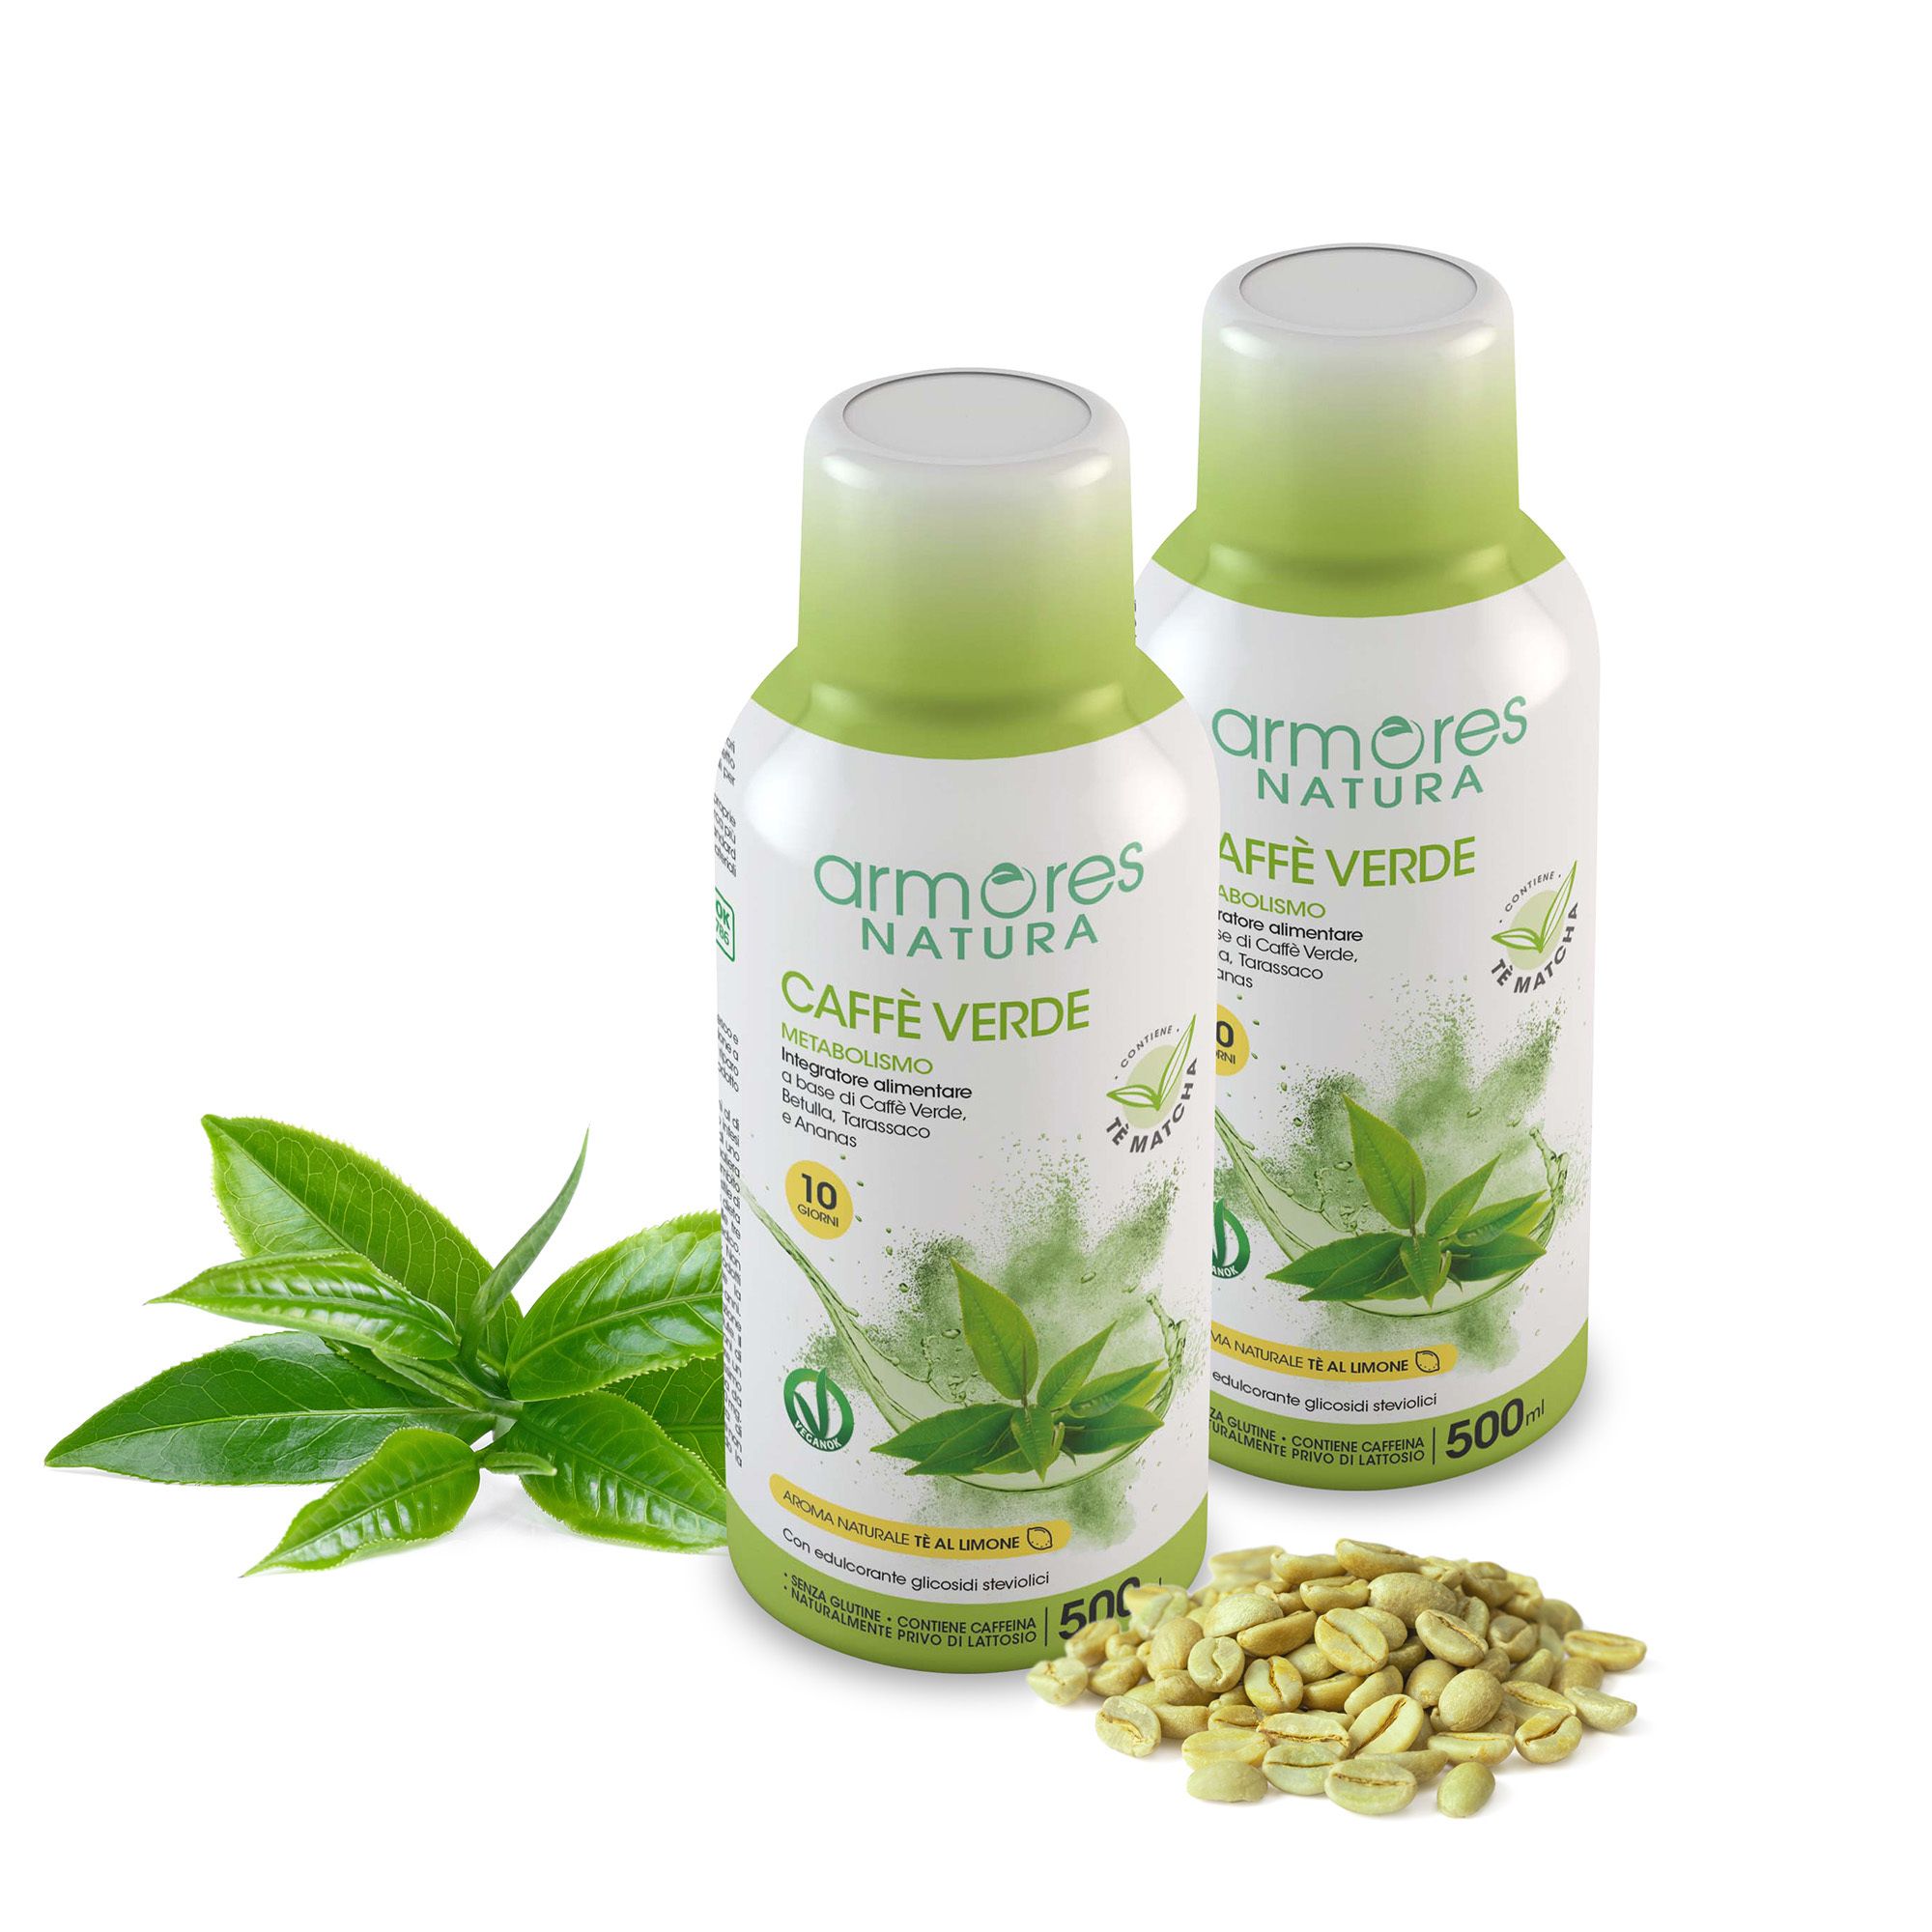 Armores Natura Caffè verde 2 integratori alimentari liquidi per metabolismo